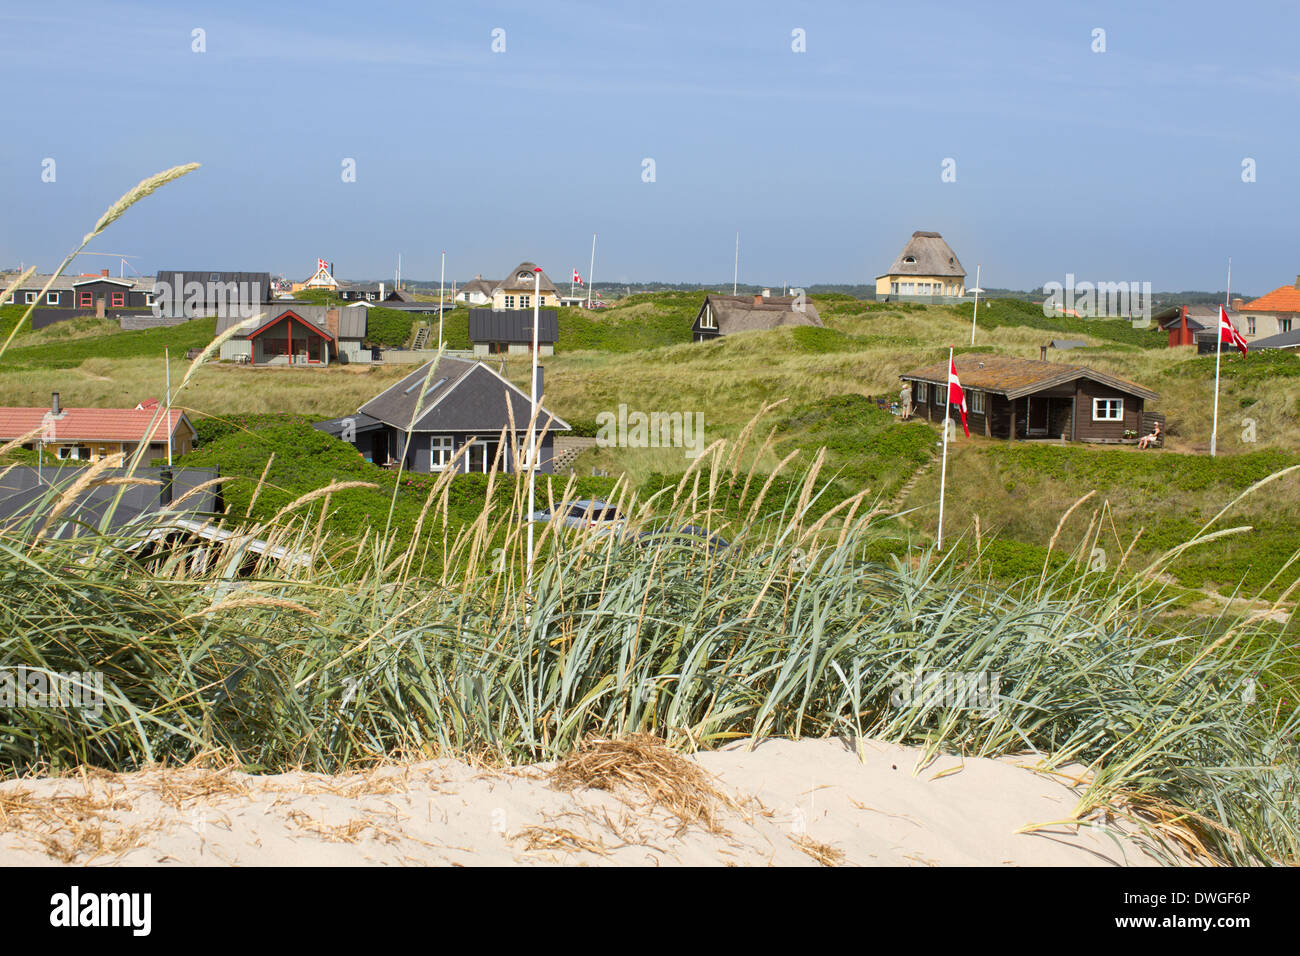 Panorama Sommer Häuser an der Nordsee Küste des westlichen Jütland, Dänemark. Sonne scheint und der Himmel ist strahlend blau. Stockfoto